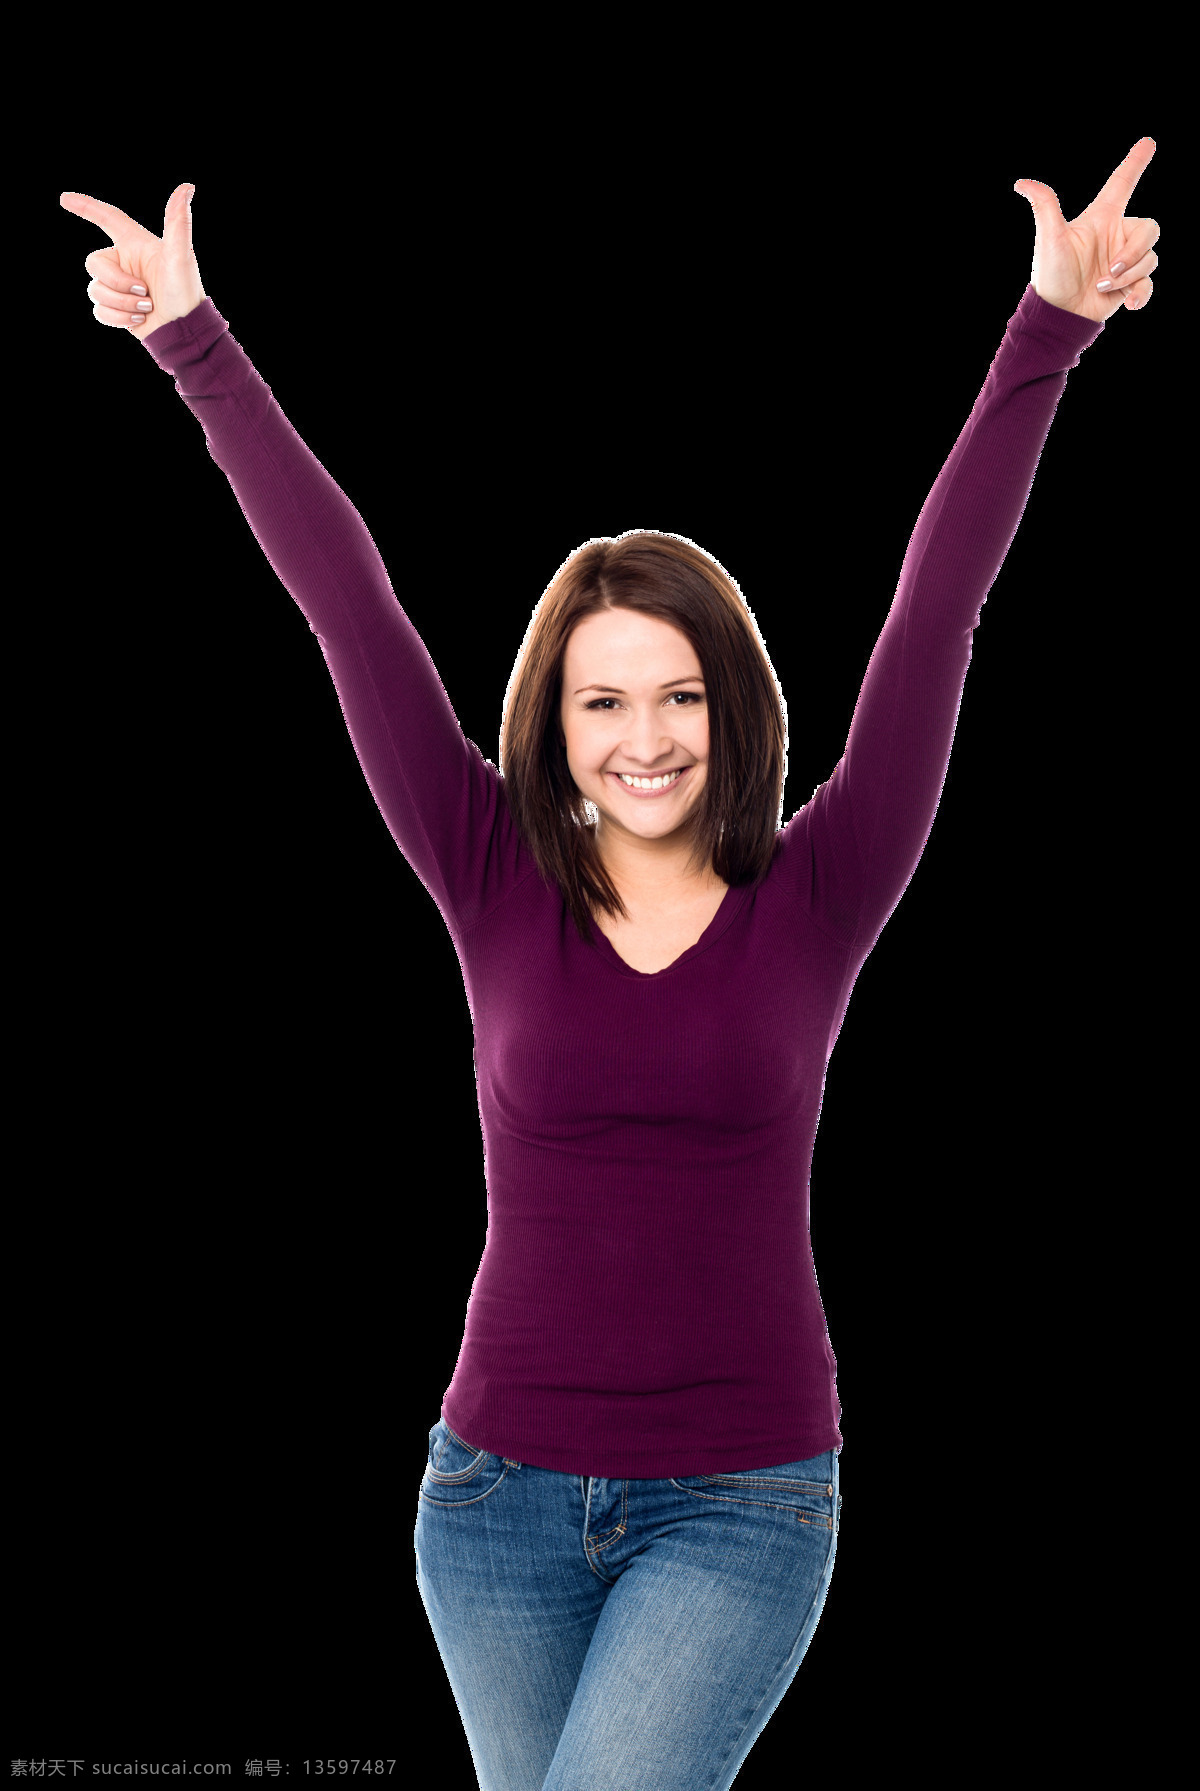 高举 双臂 快乐 女性 外国女性 中年女性 生活装扮 举双手 加油 生活人物 人物图片